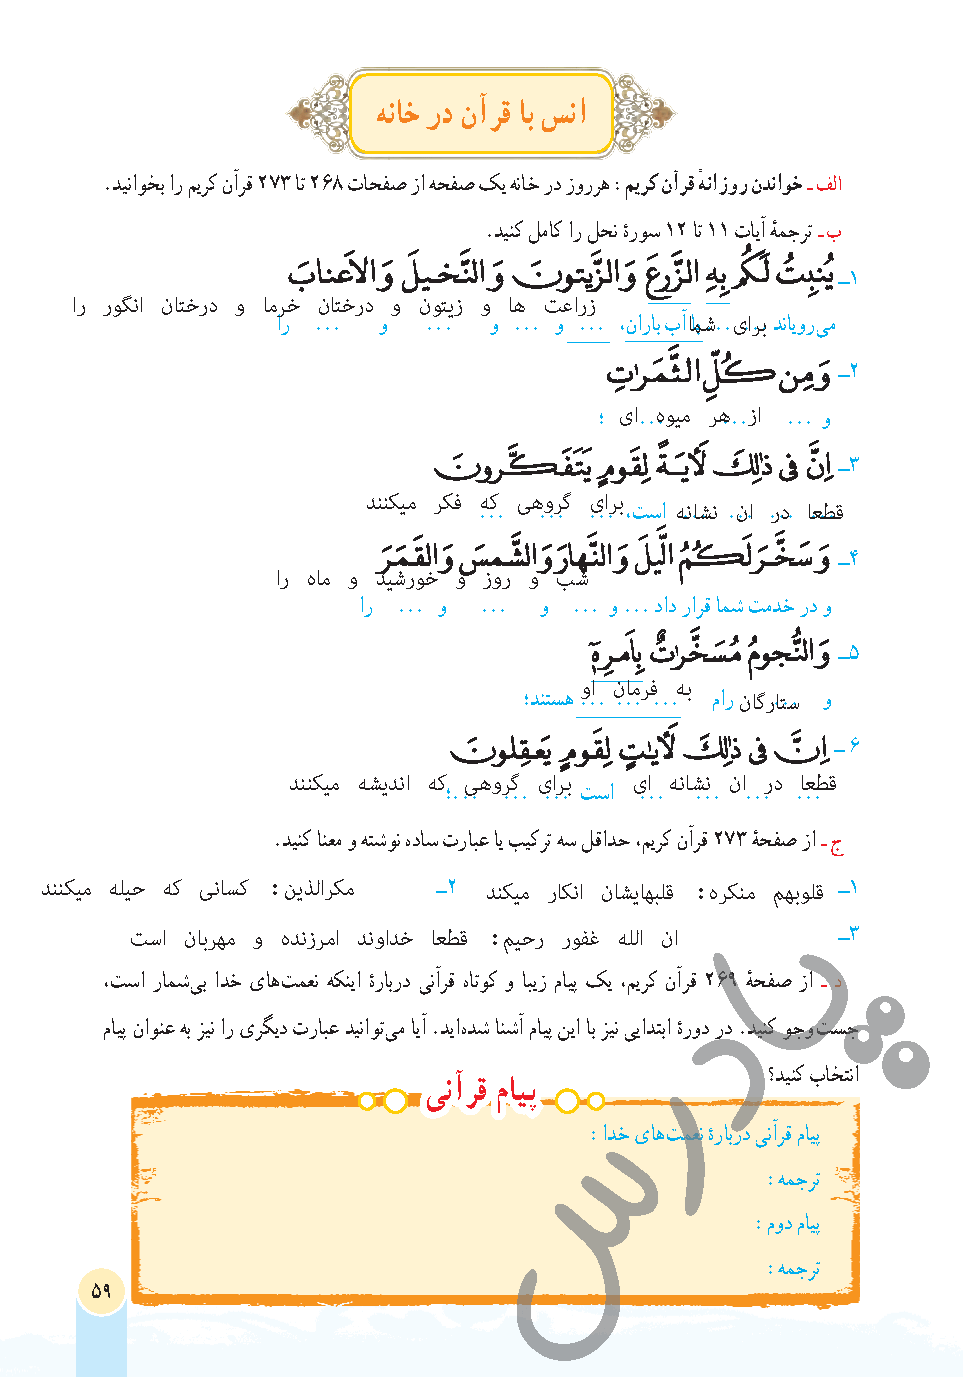 جواب انس با قرآن درس 6 قرآن هفتم - جلسه اول